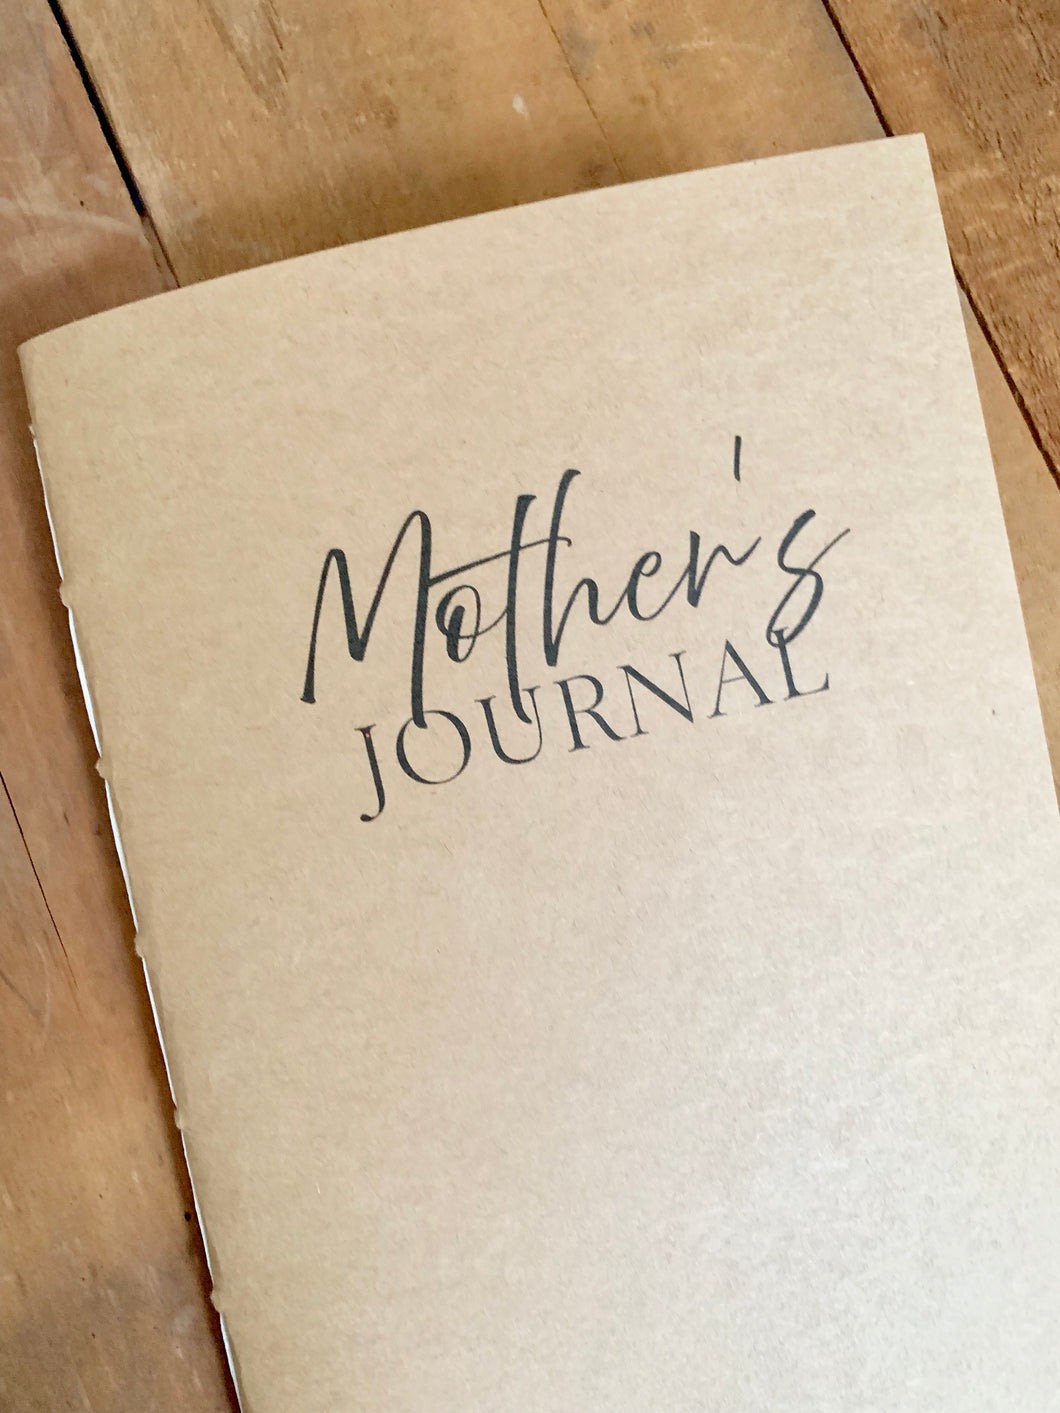 Mother’s Journal Insert